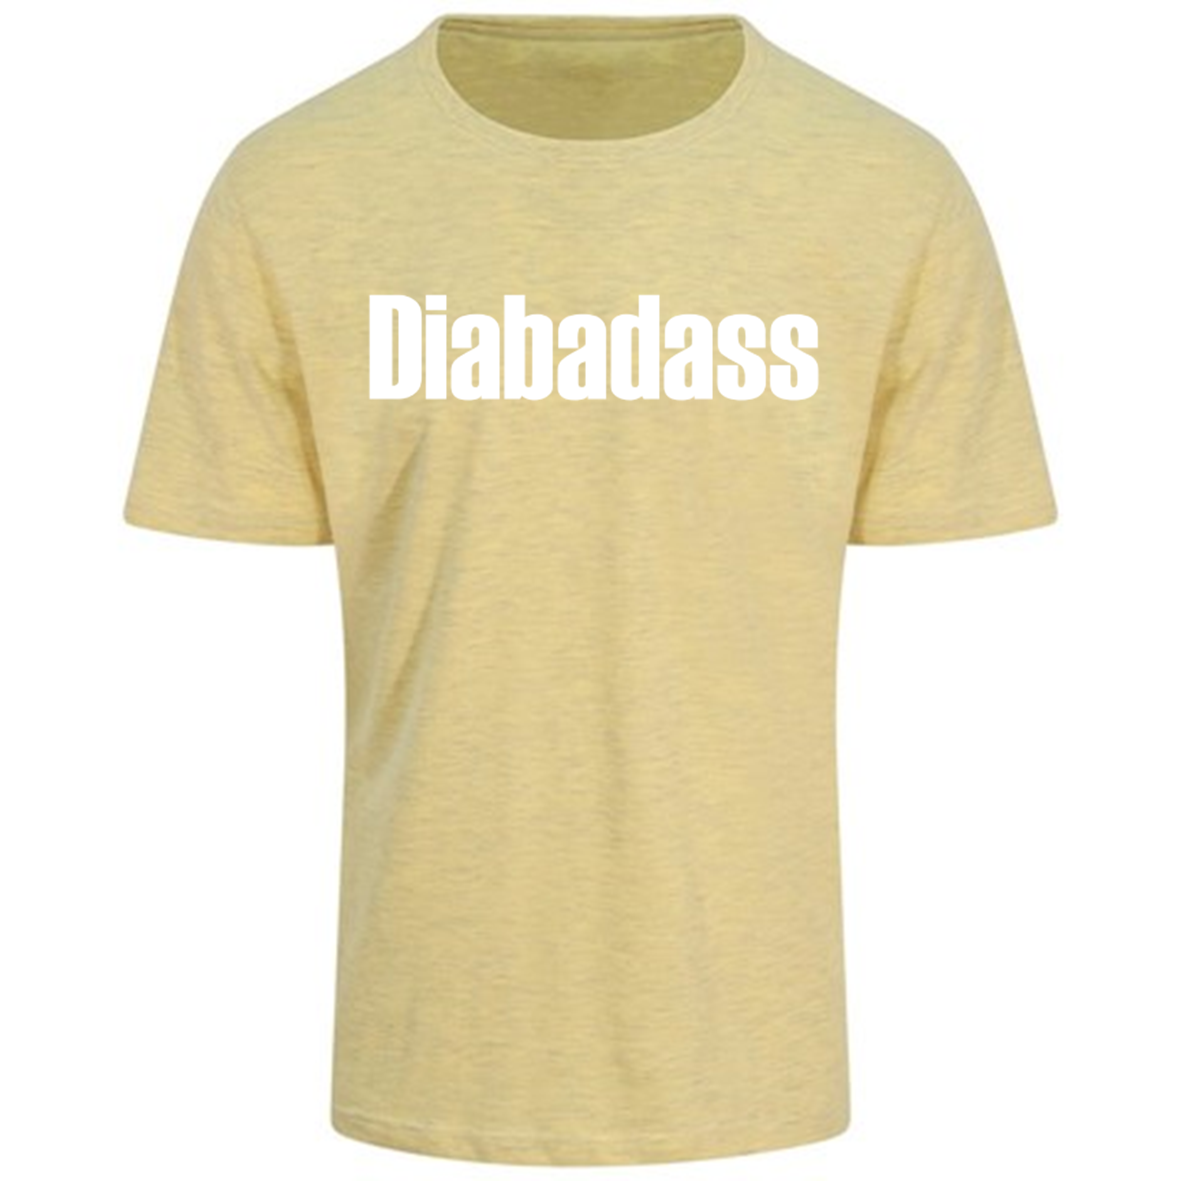 Diabadass Pastel T-Shirt